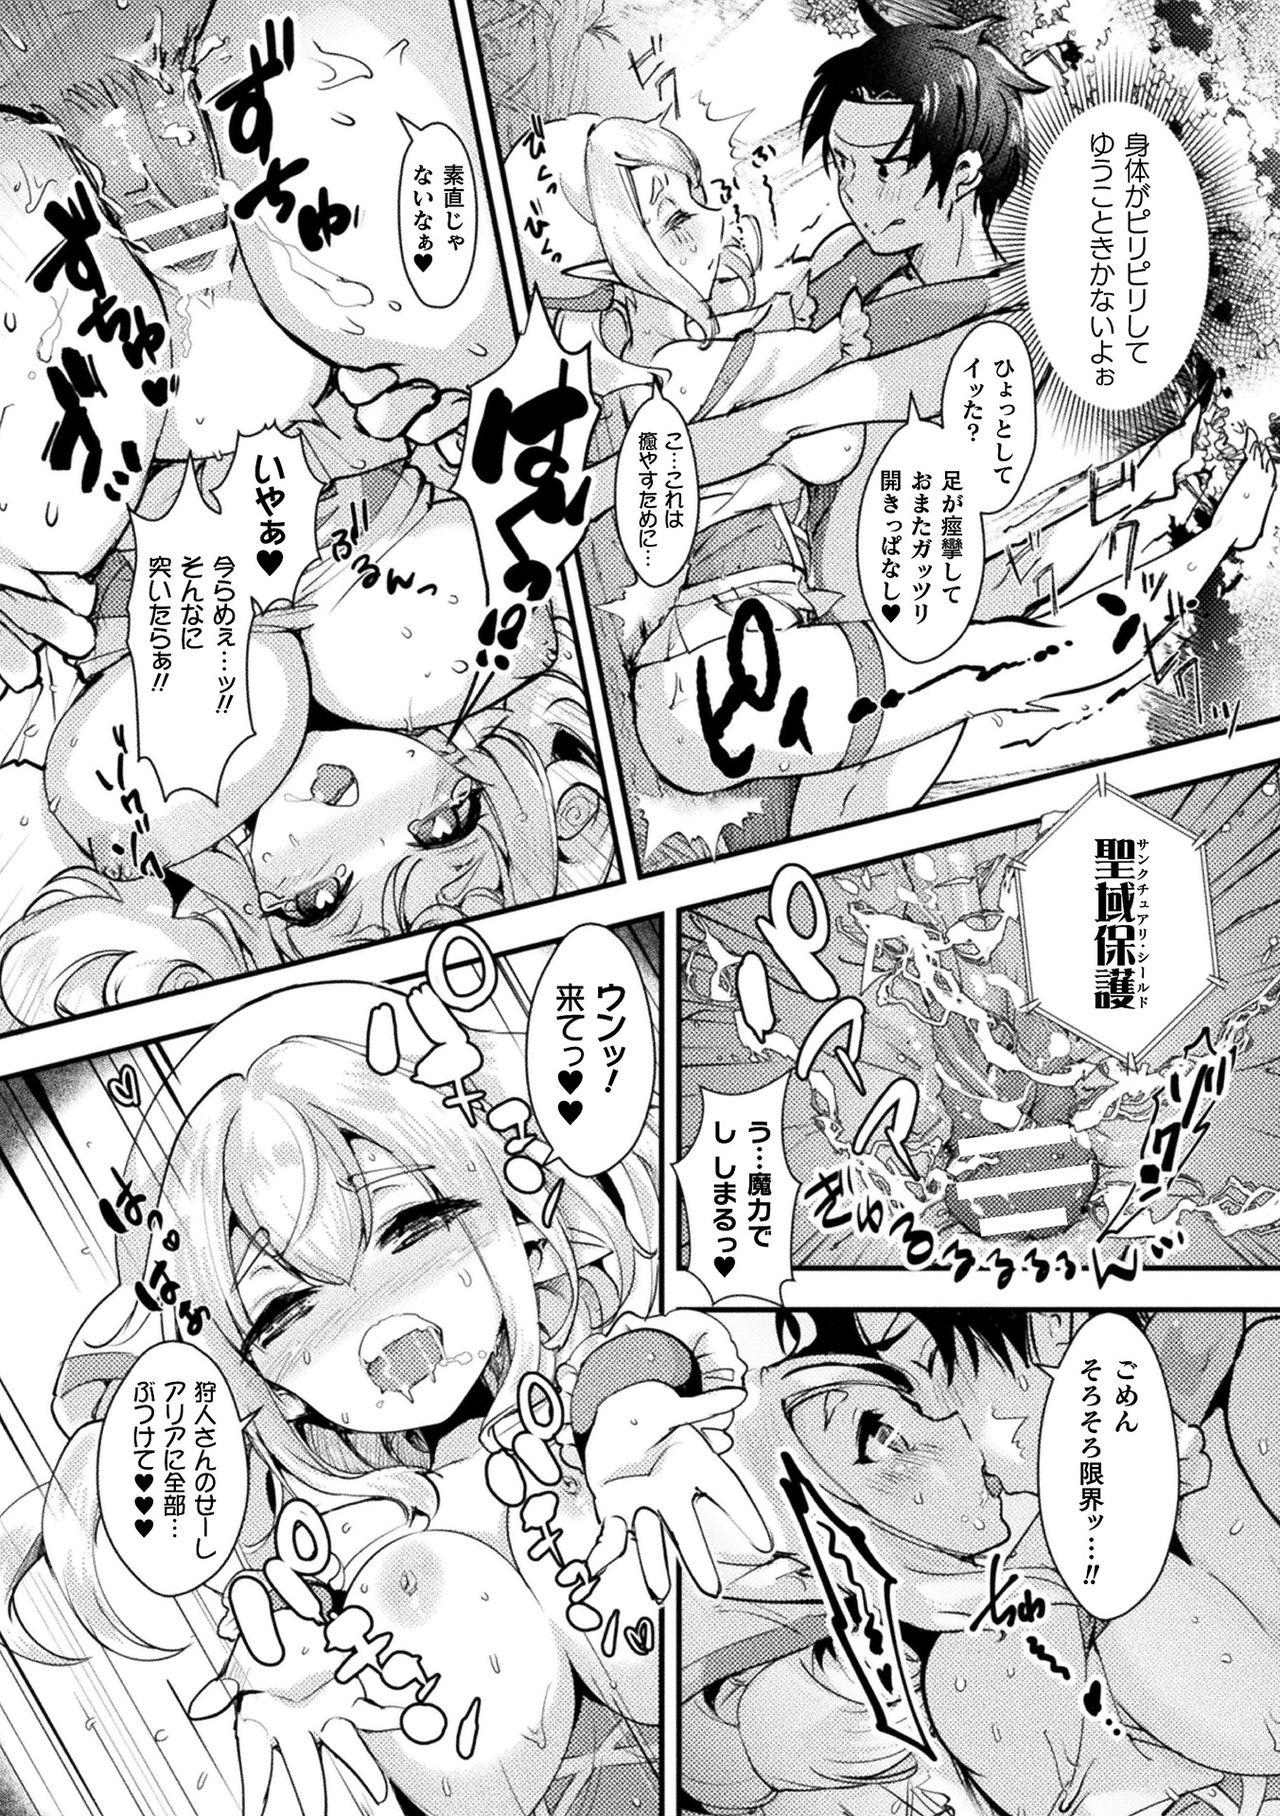 [Anthology] Bessatsu Comic Unreal Ponkotsu Fantasy Heroine H ~Doji o Funde Gyakuten Saretari Ero Trap ni Hamattari!?~ Vol. 1 [Digital] 72